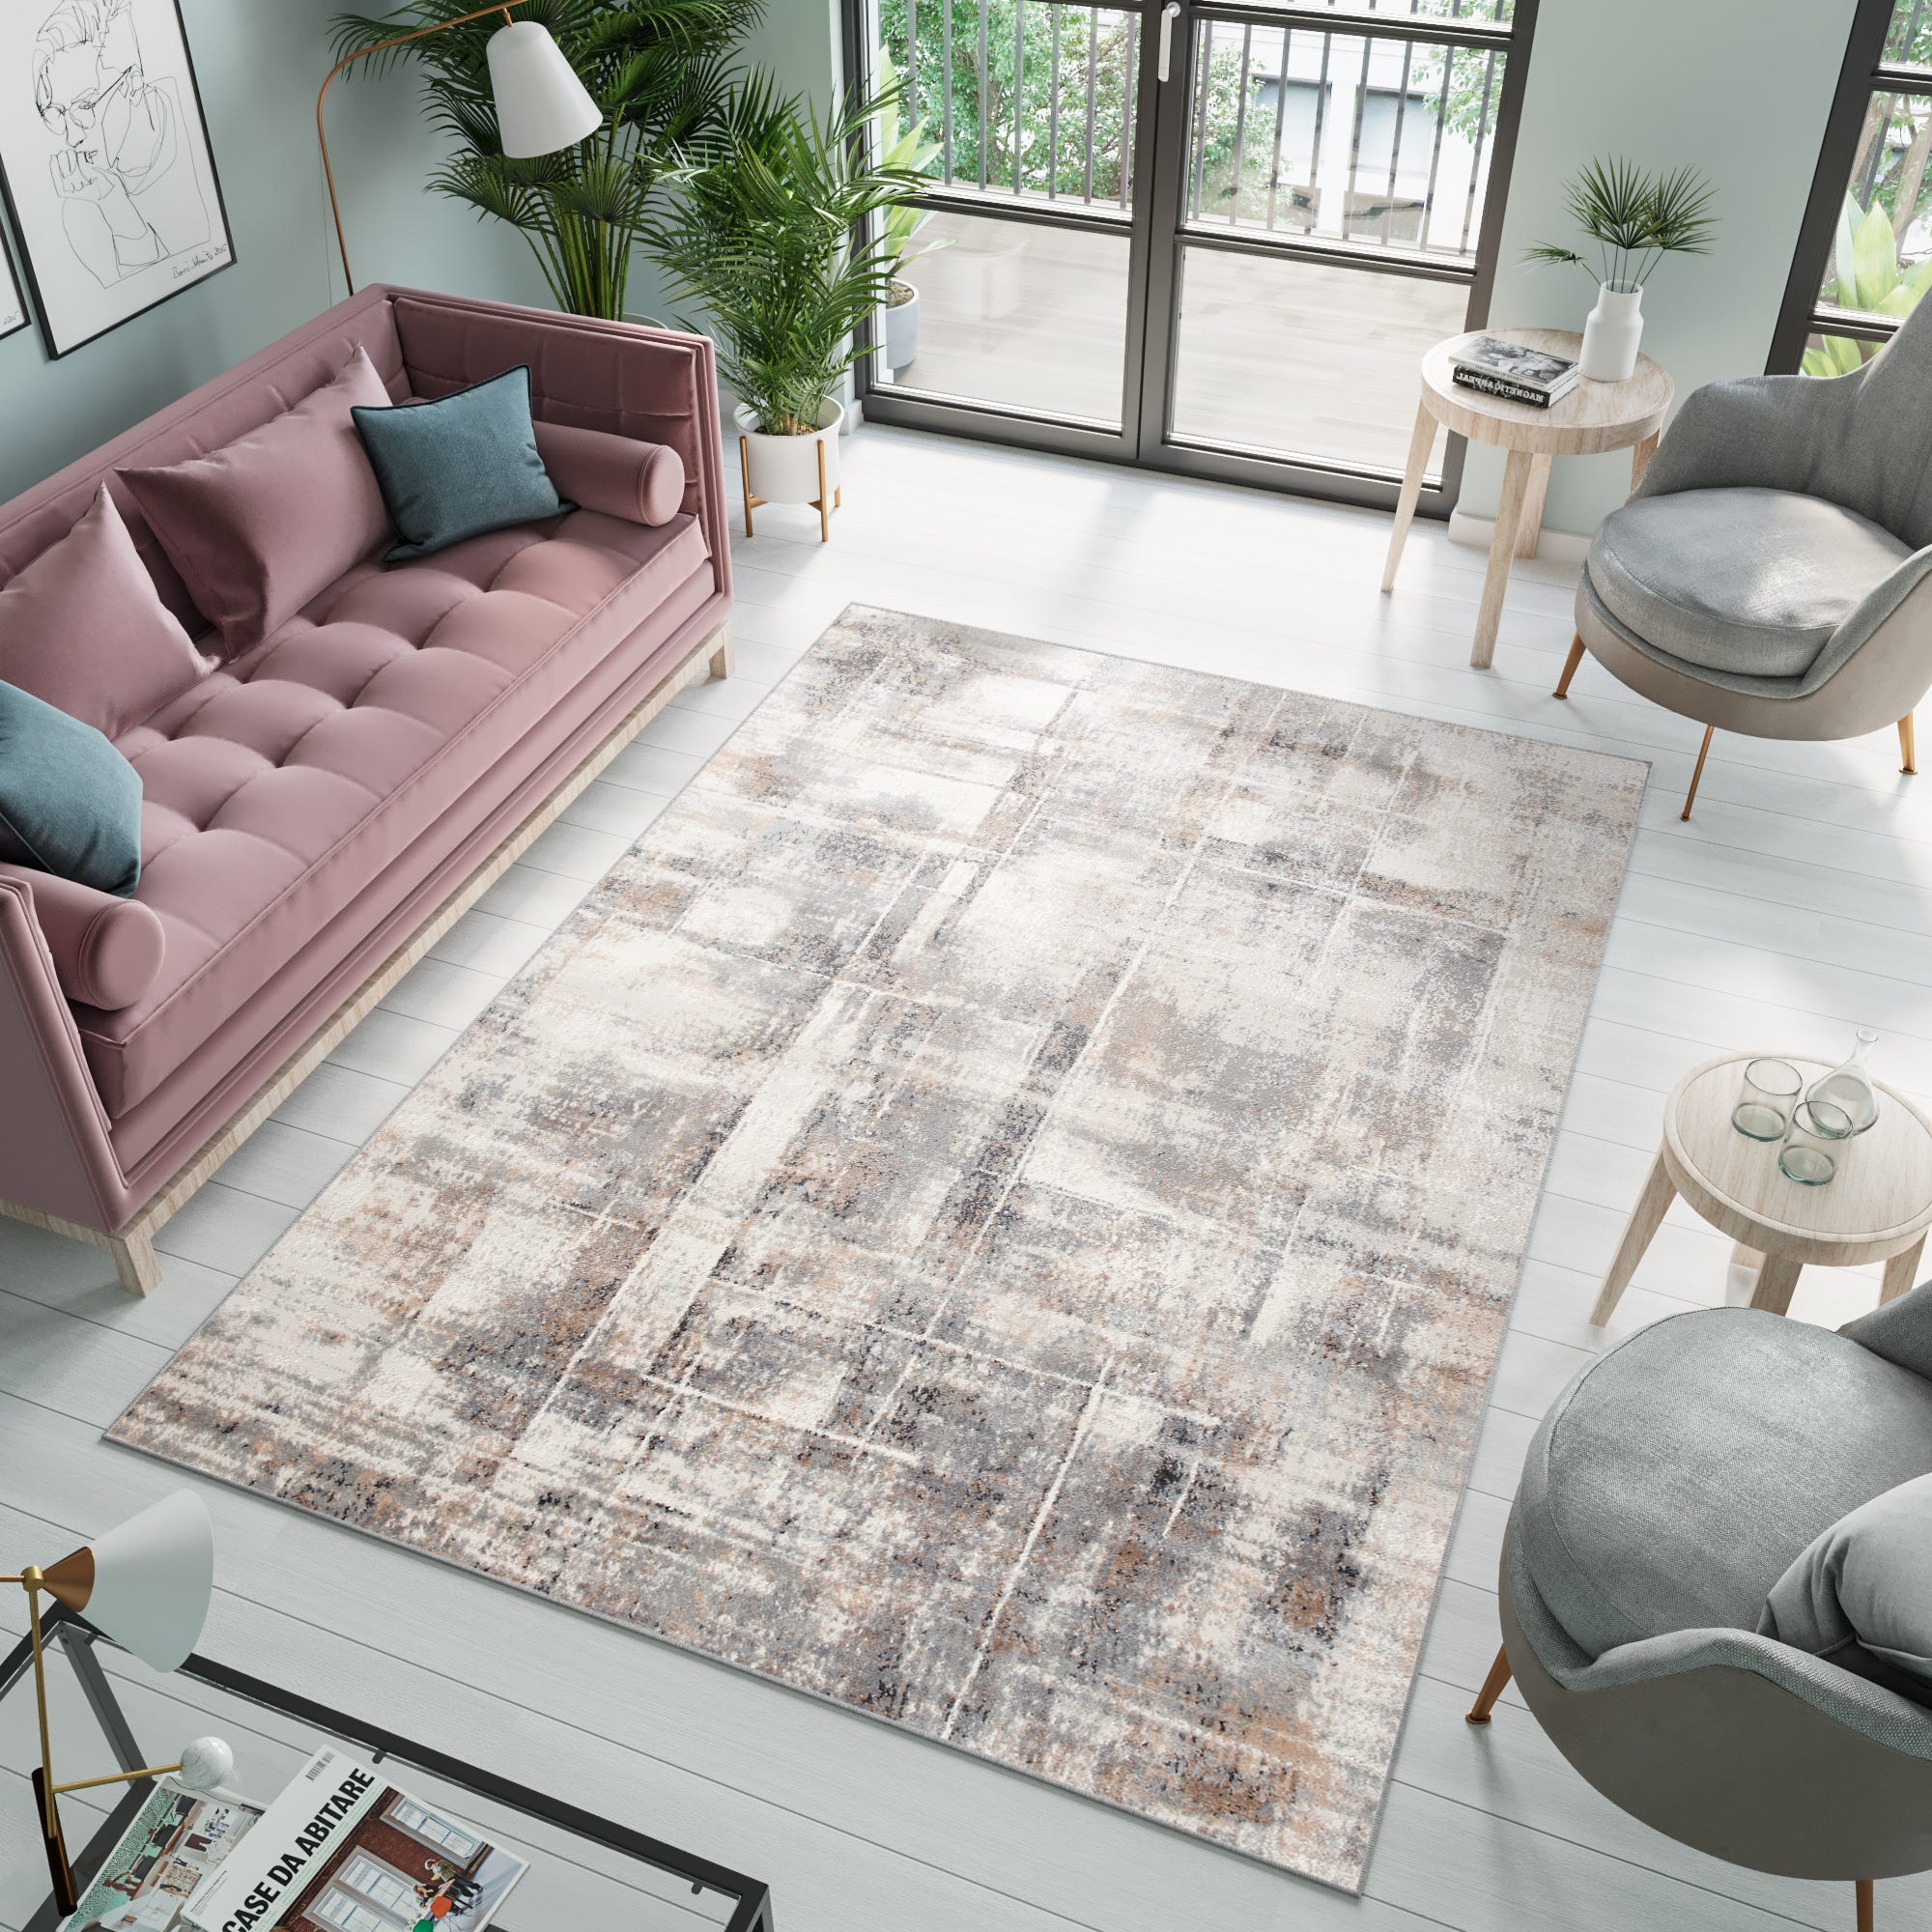 Tappeto beige salotto » Fantastici tappeti per la tua casa - Trendcarpet